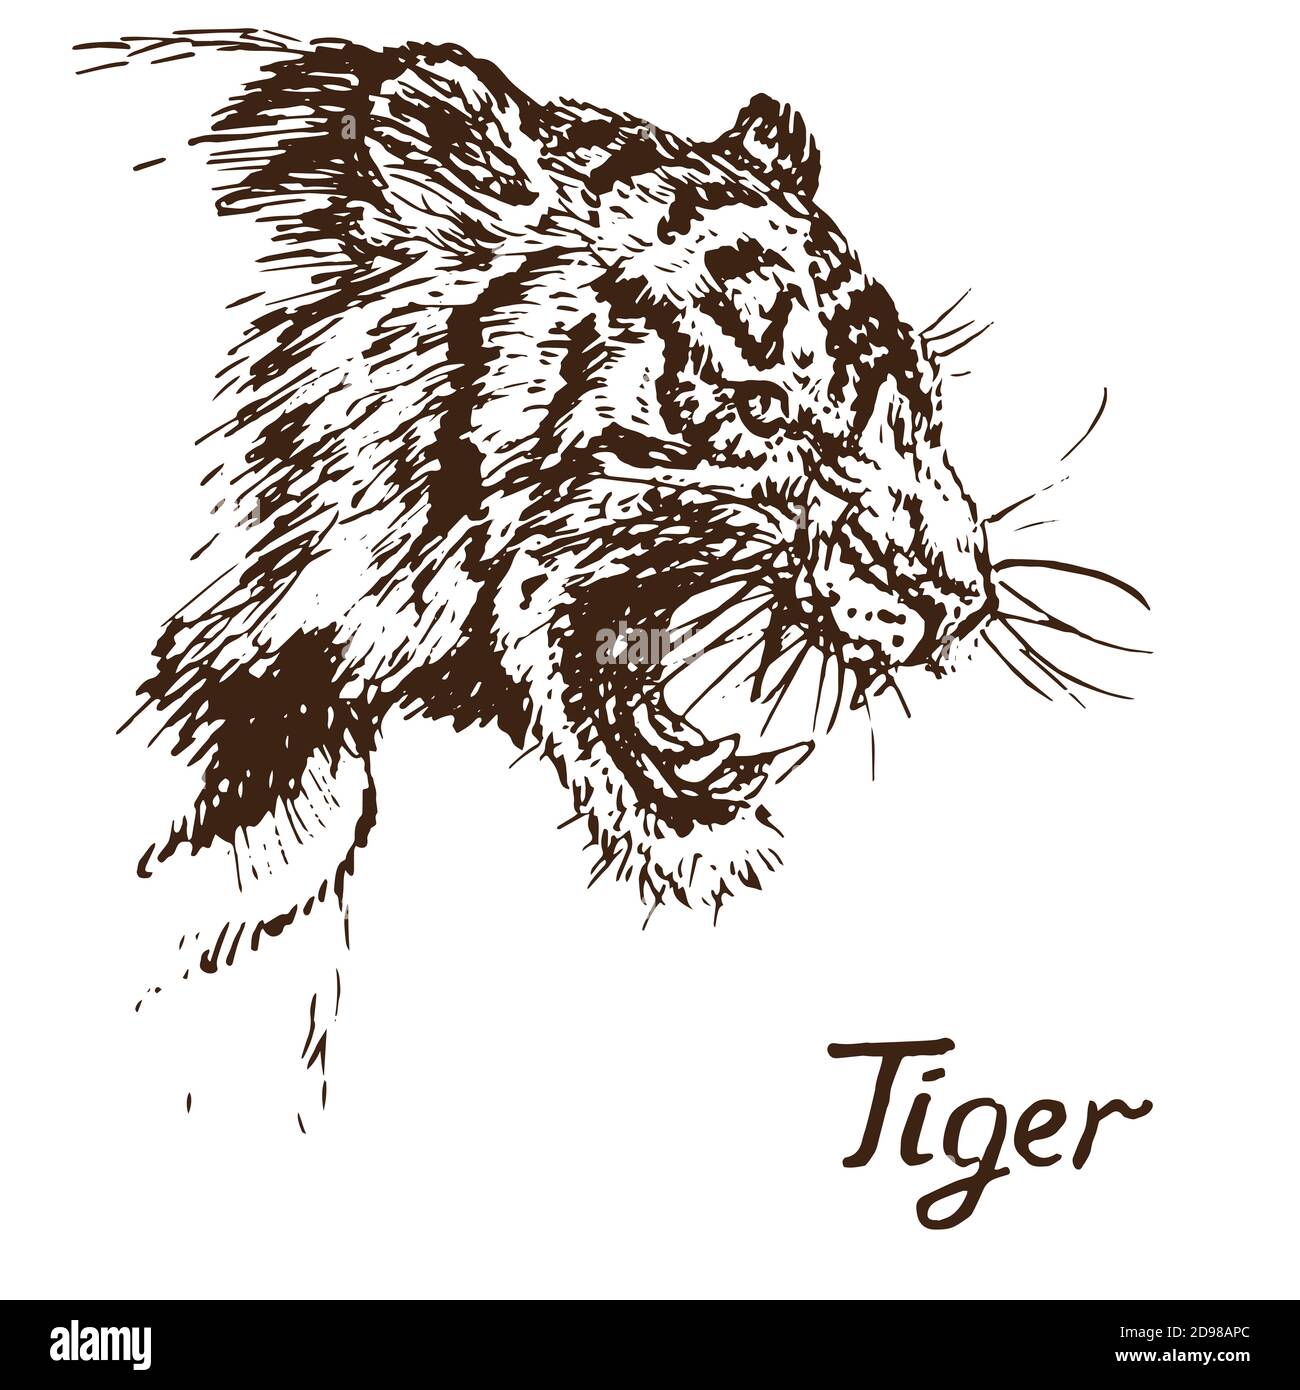 Tiger knurrende Porträt, hat einen verbitterten Mund geöffnet, Eckzähne, handgezeichnete Doodle, Skizze in Tiefdruck-Stil Illustration Stockfoto